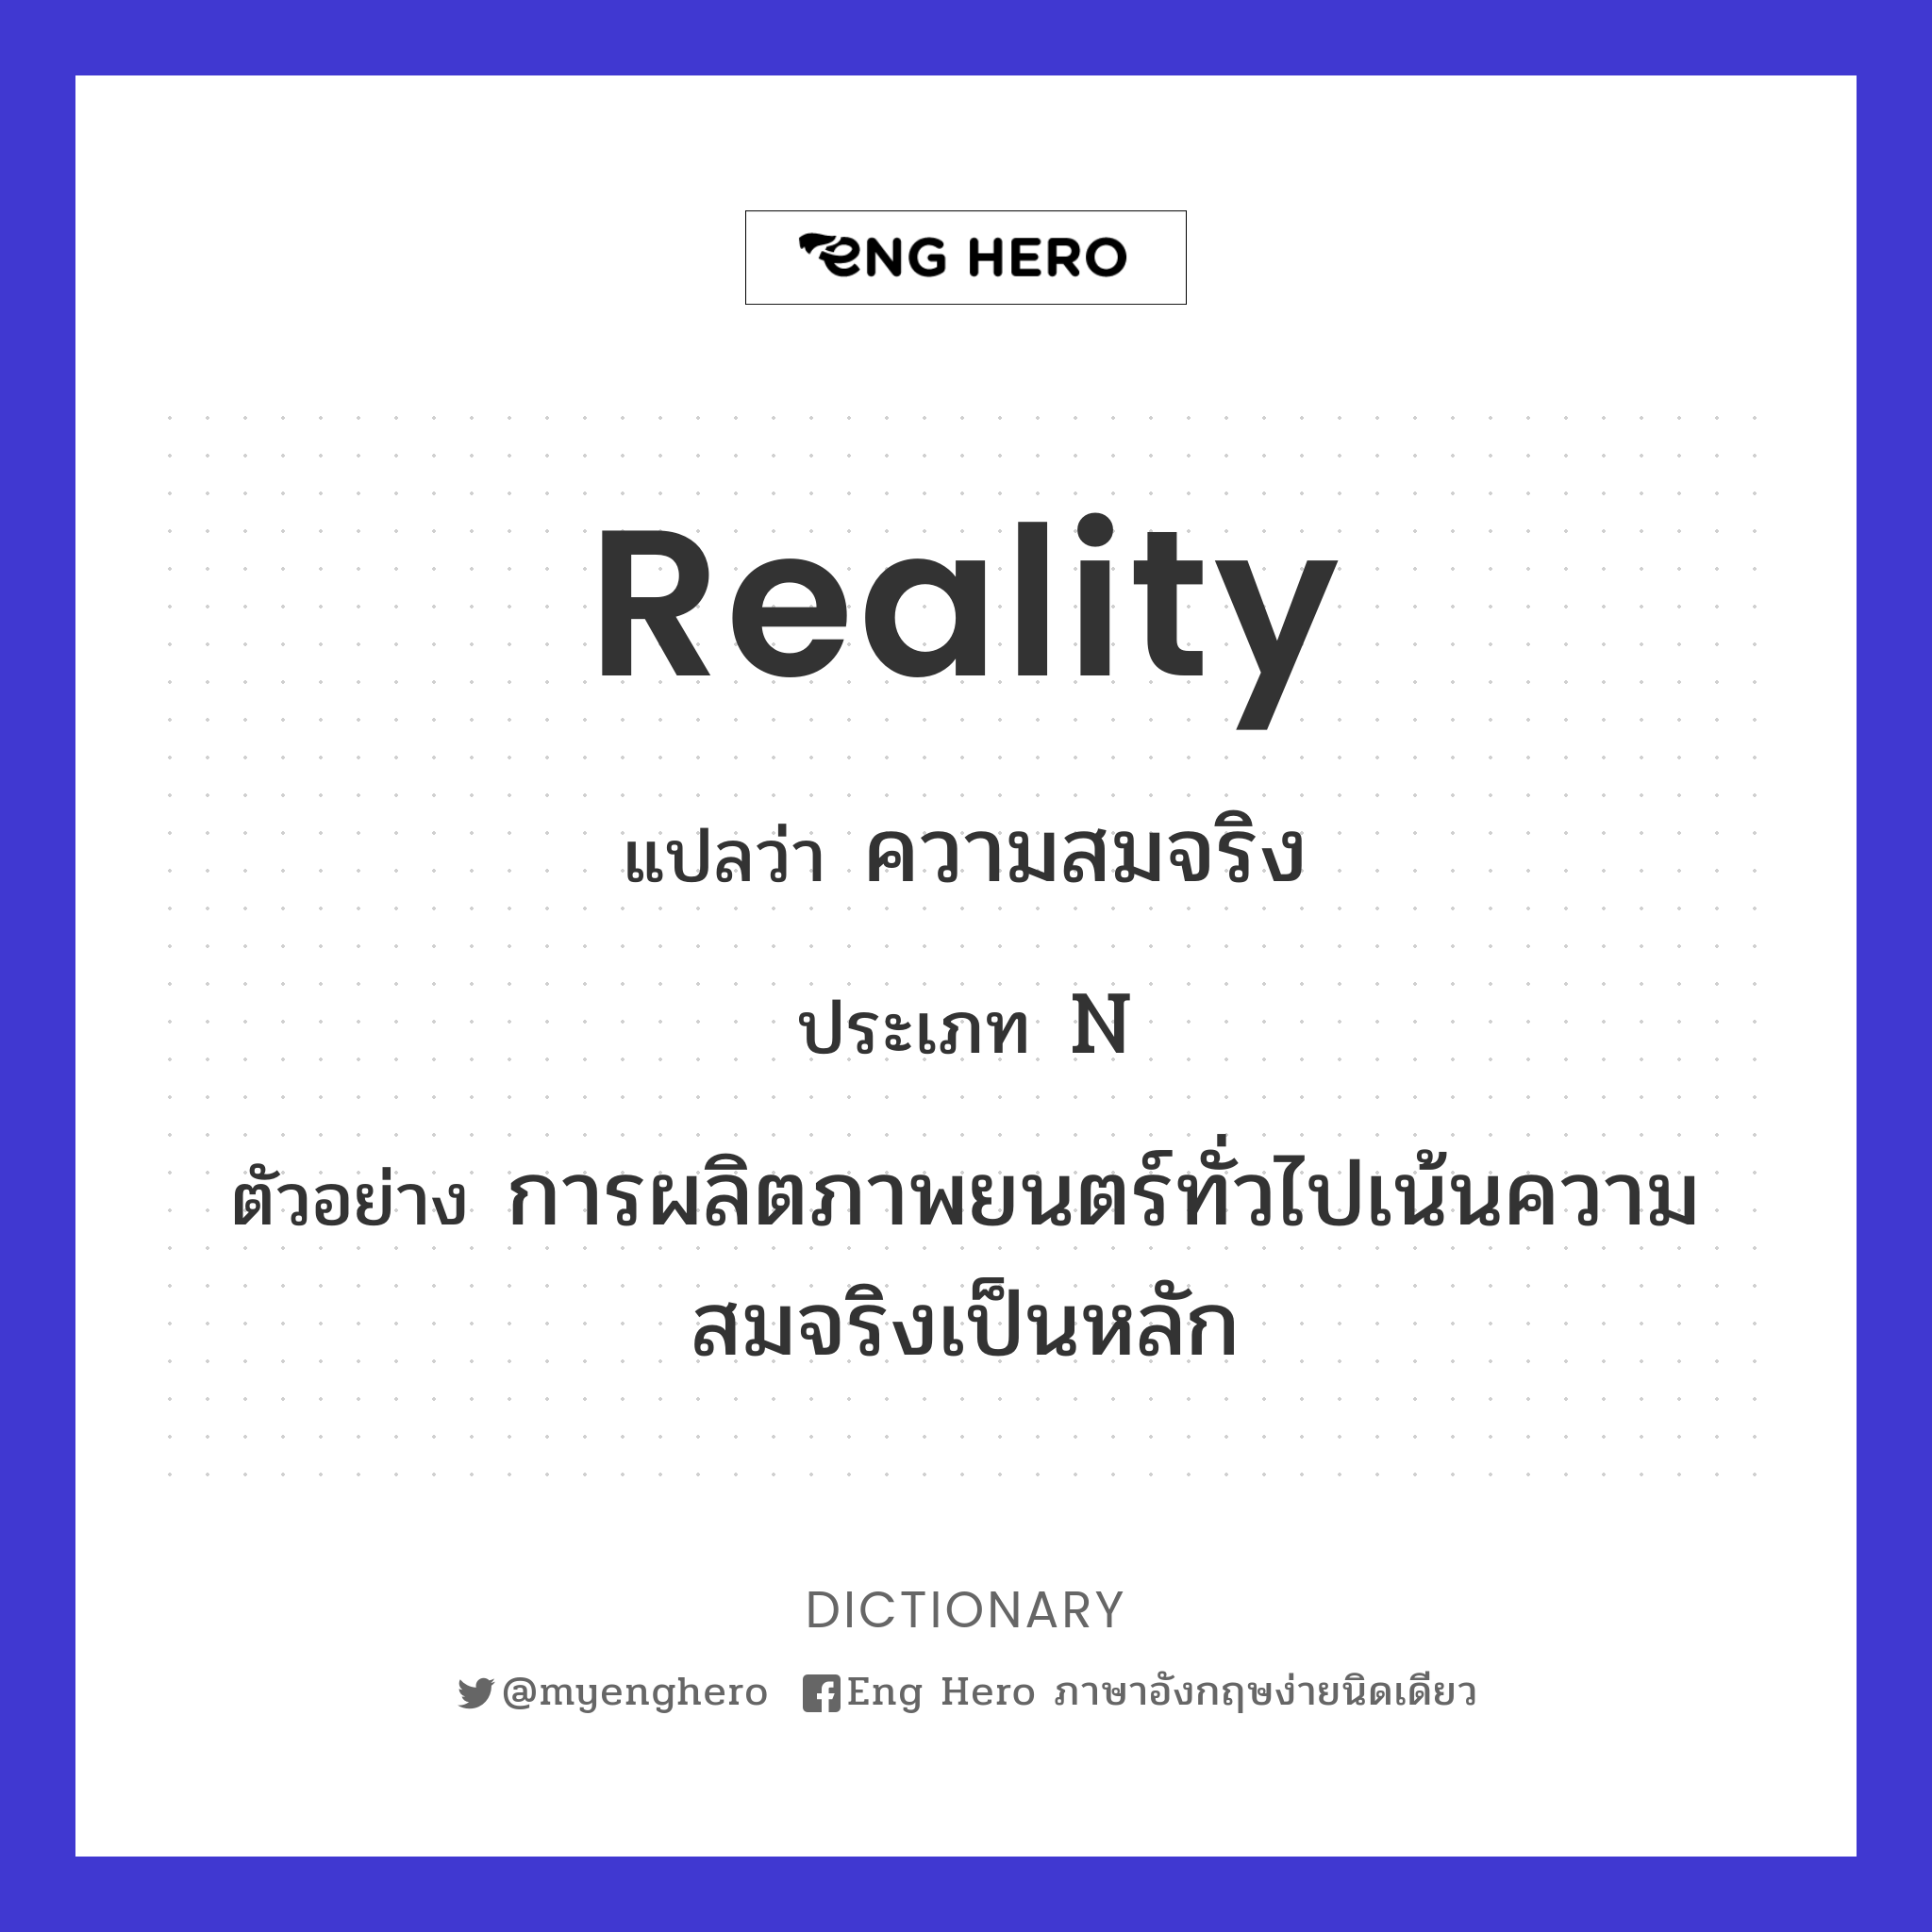 reality